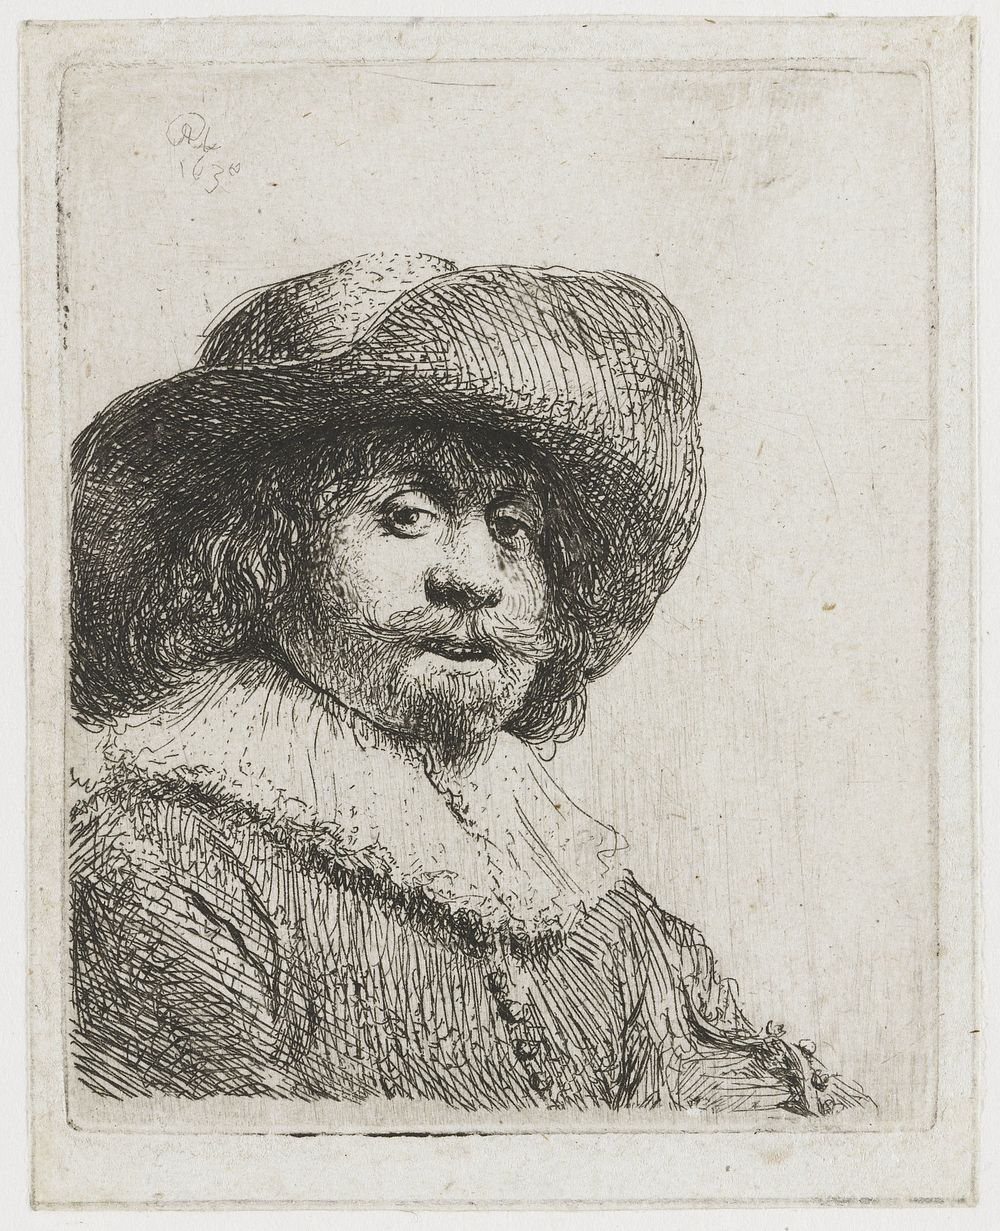 Man in a Broad-brimmed Hat (1630) by Rembrandt van Rijn and Rembrandt van Rijn